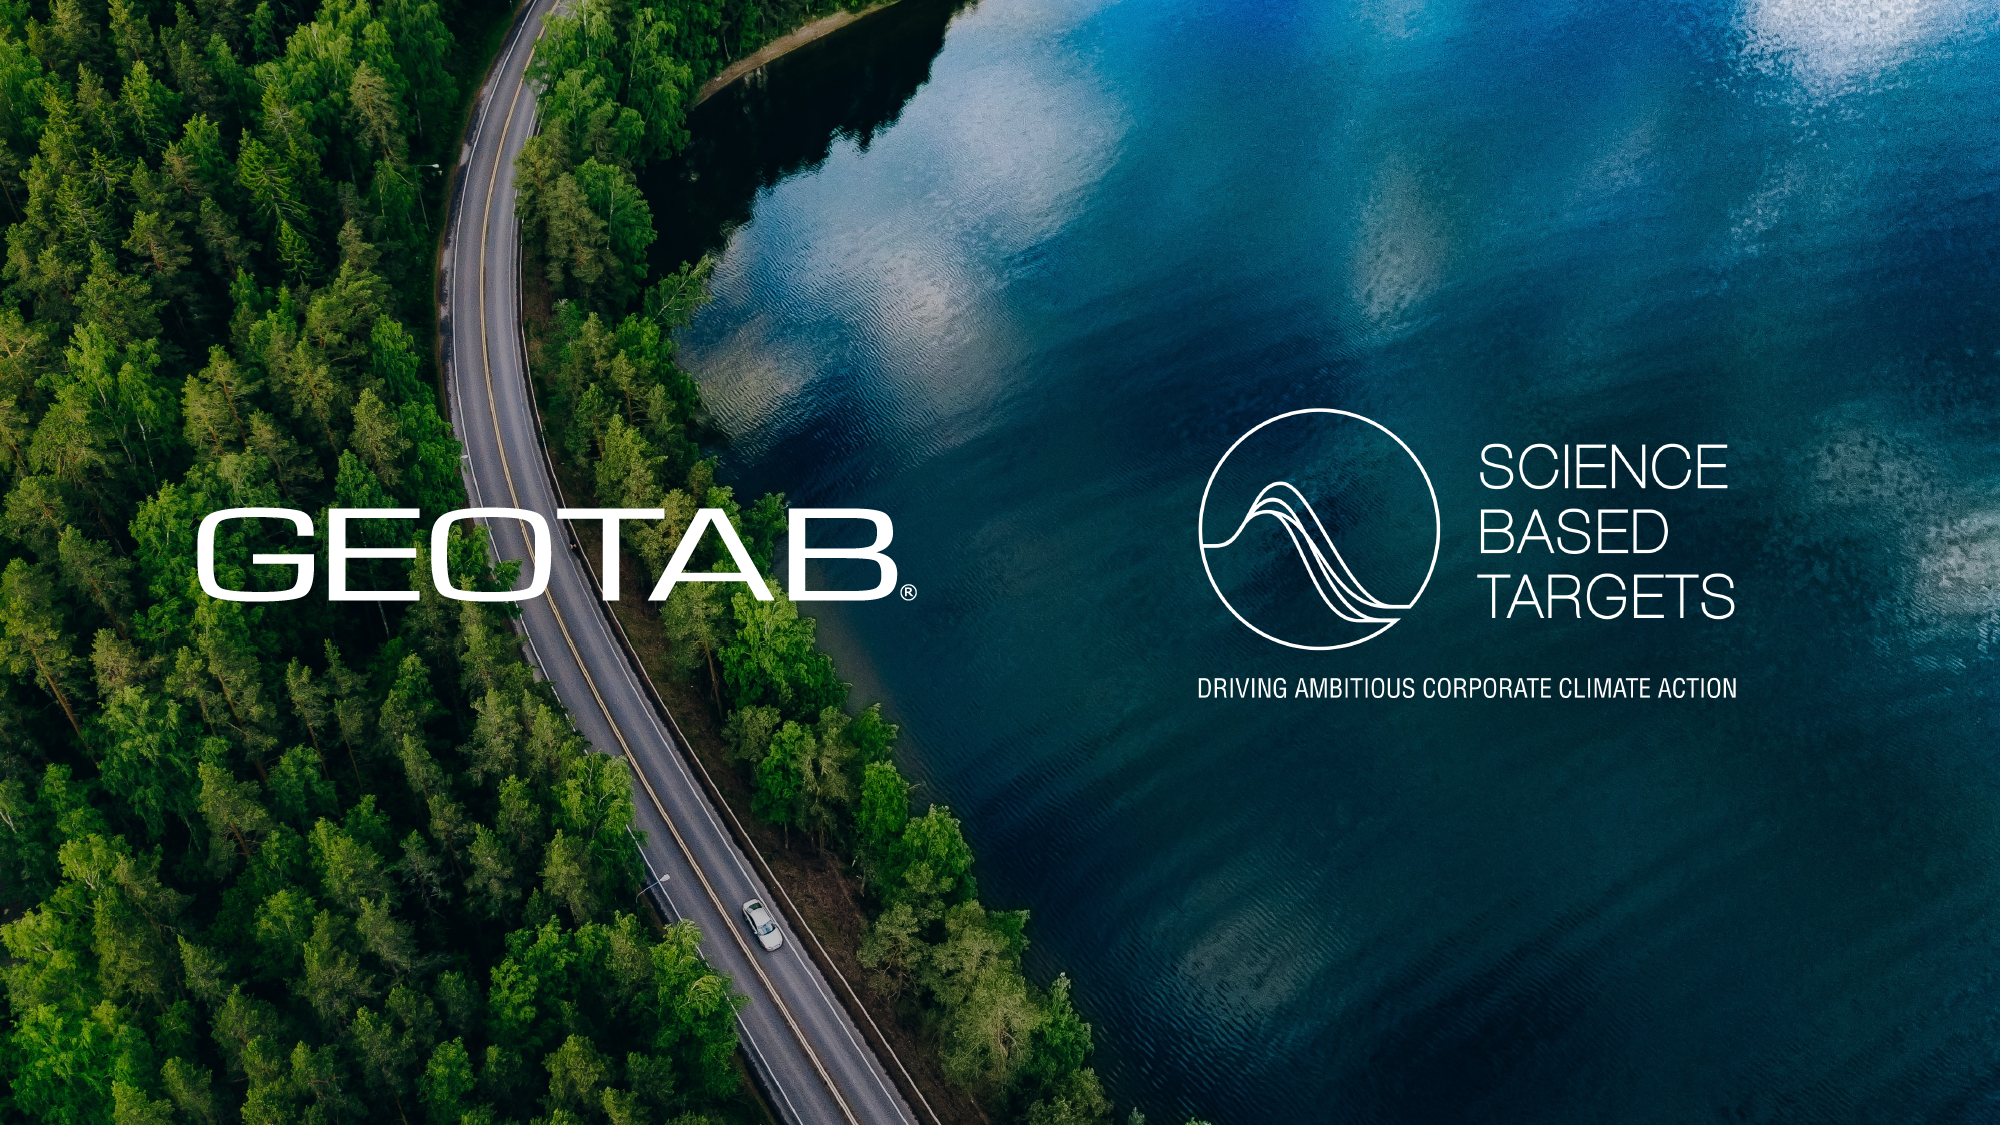 Foto de un lago con una carretera rodeado por un bosque con el logo de Geotab y SBTi.